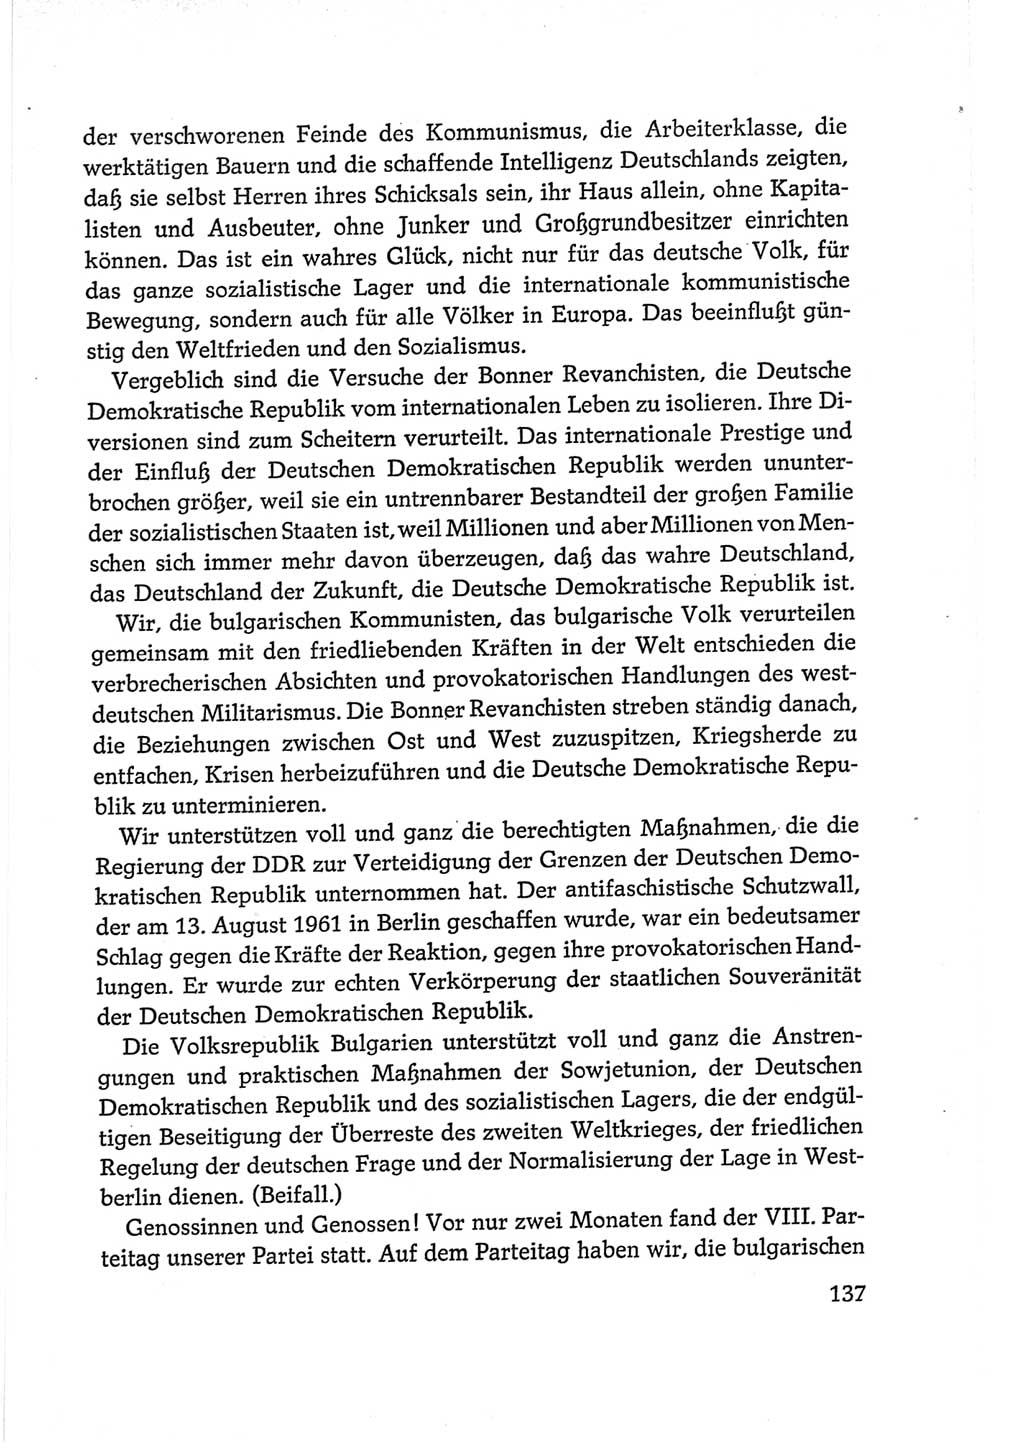 Protokoll der Verhandlungen des Ⅵ. Parteitages der Sozialistischen Einheitspartei Deutschlands (SED) [Deutsche Demokratische Republik (DDR)] 1963, Band Ⅱ, Seite 137 (Prot. Verh. Ⅵ. PT SED DDR 1963, Bd. Ⅱ, S. 137)